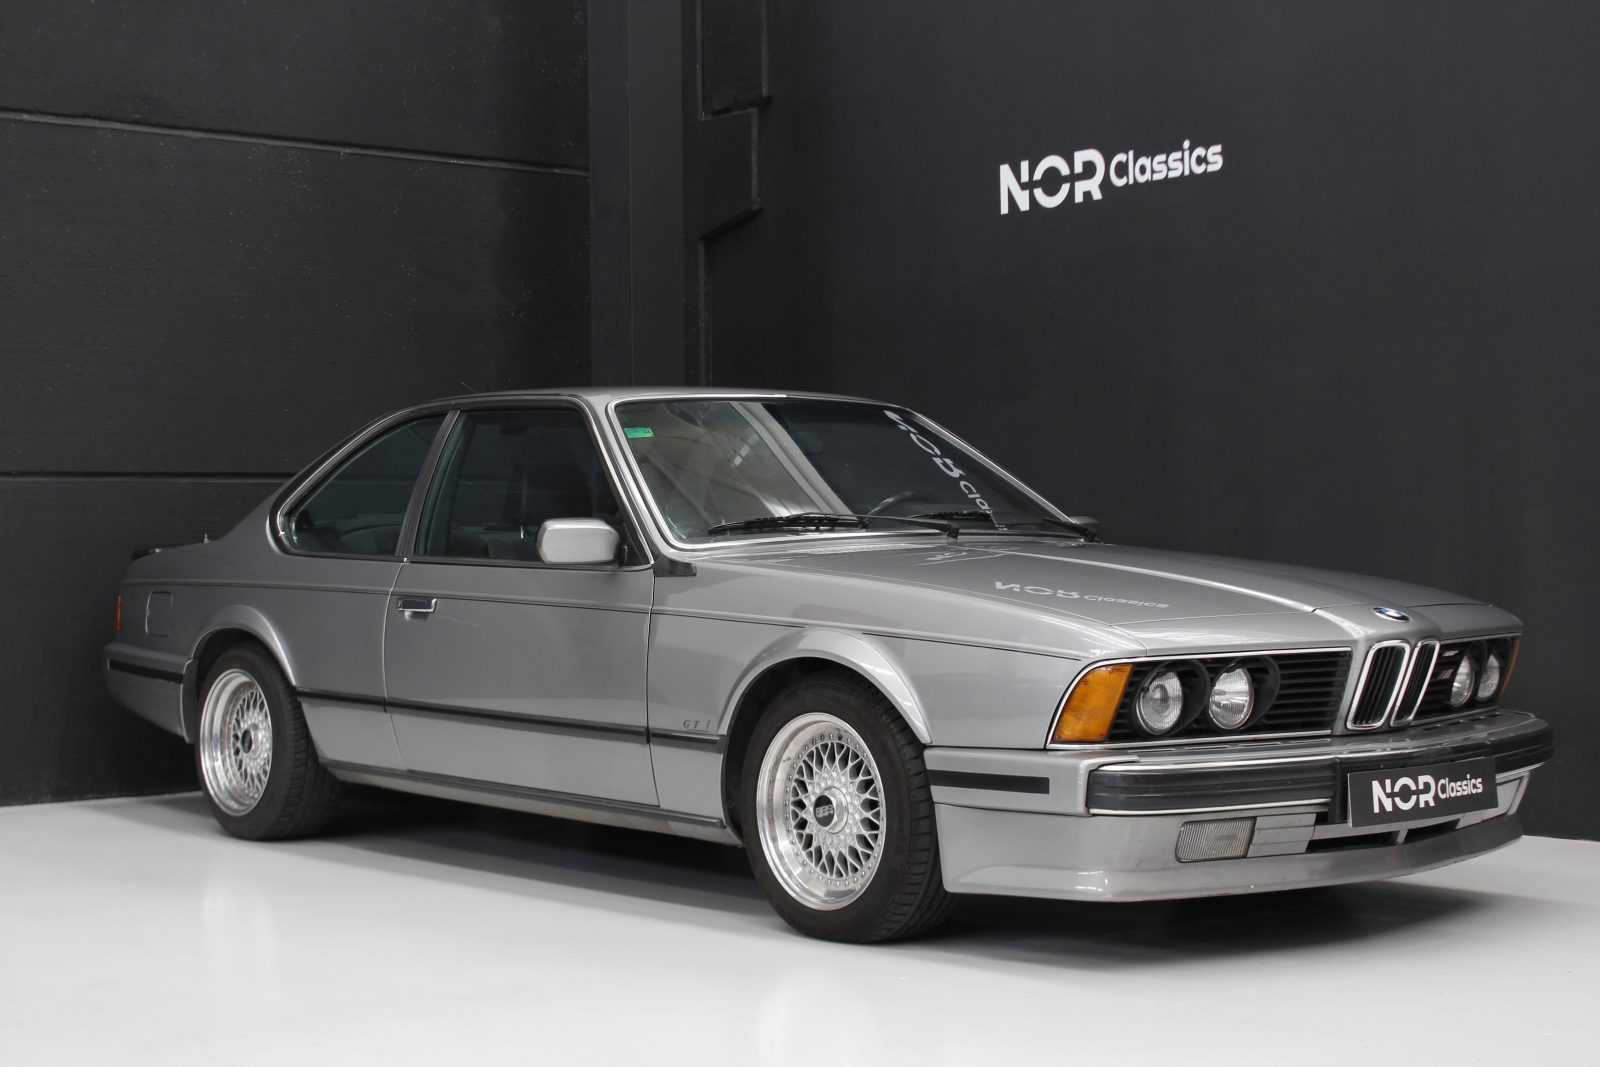 BMW E24 M635csi 118,000 kms Colección NorClassics